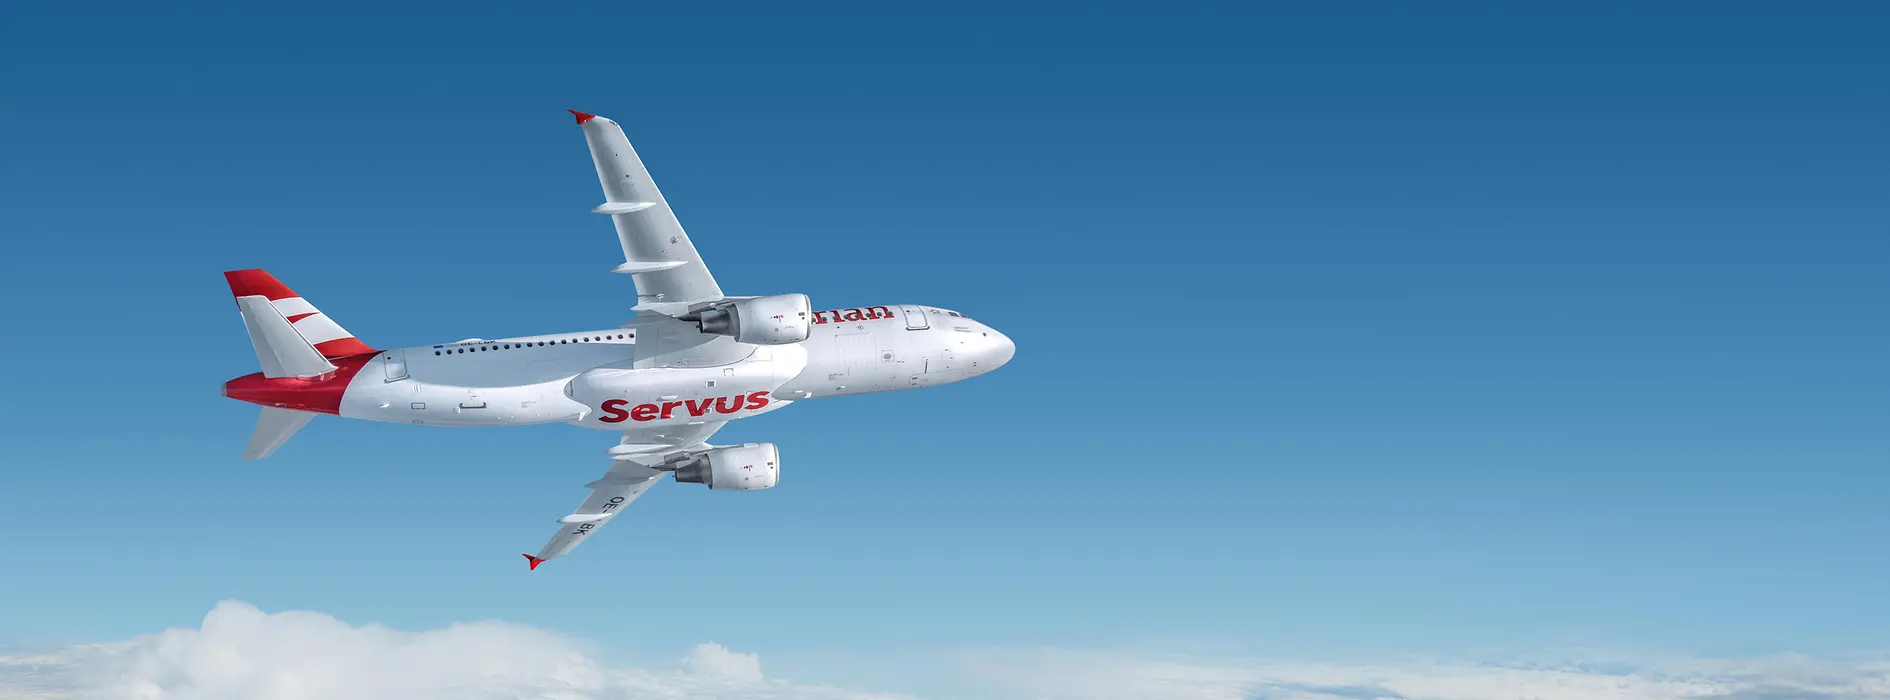 Weißes Flugzeug mit roter Aufschrift "Servus" von Austrian Airlines, das über den Wolken fliegt